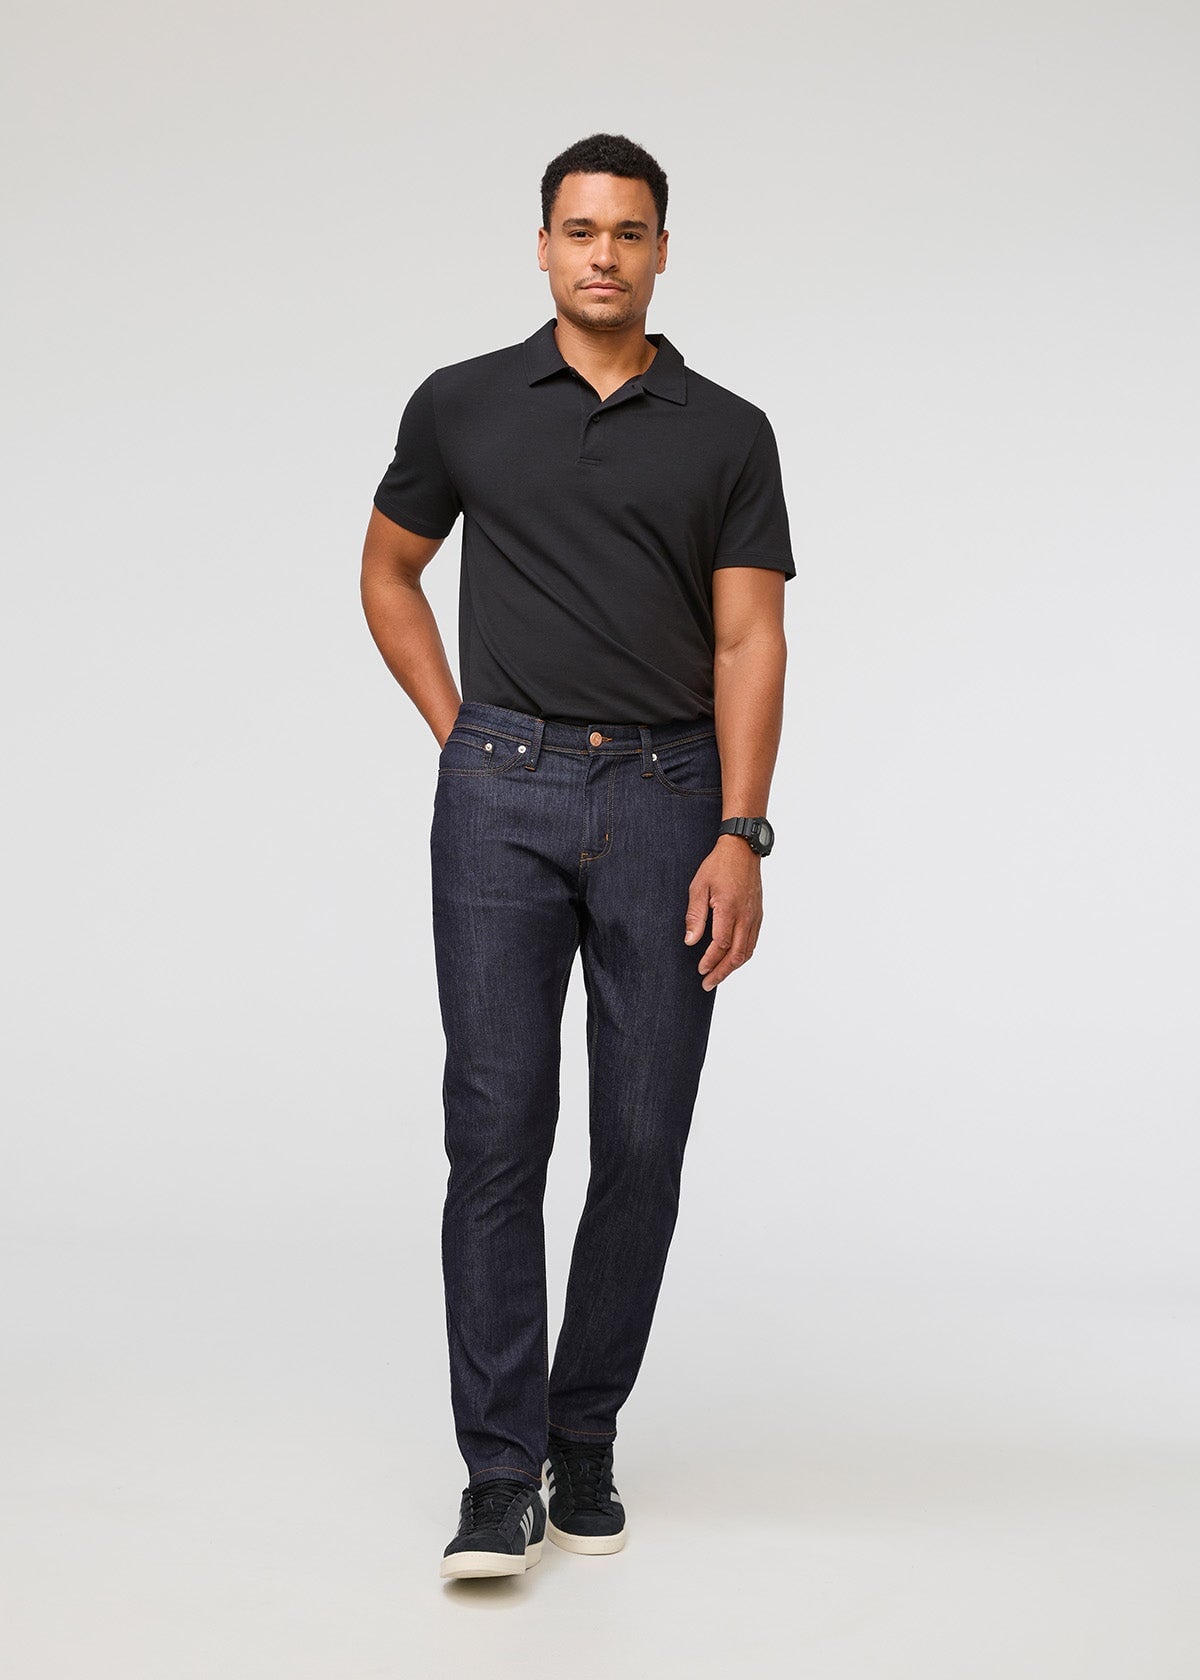 Men's Designer Jeans - Black Jeans, Blue Jeans & More